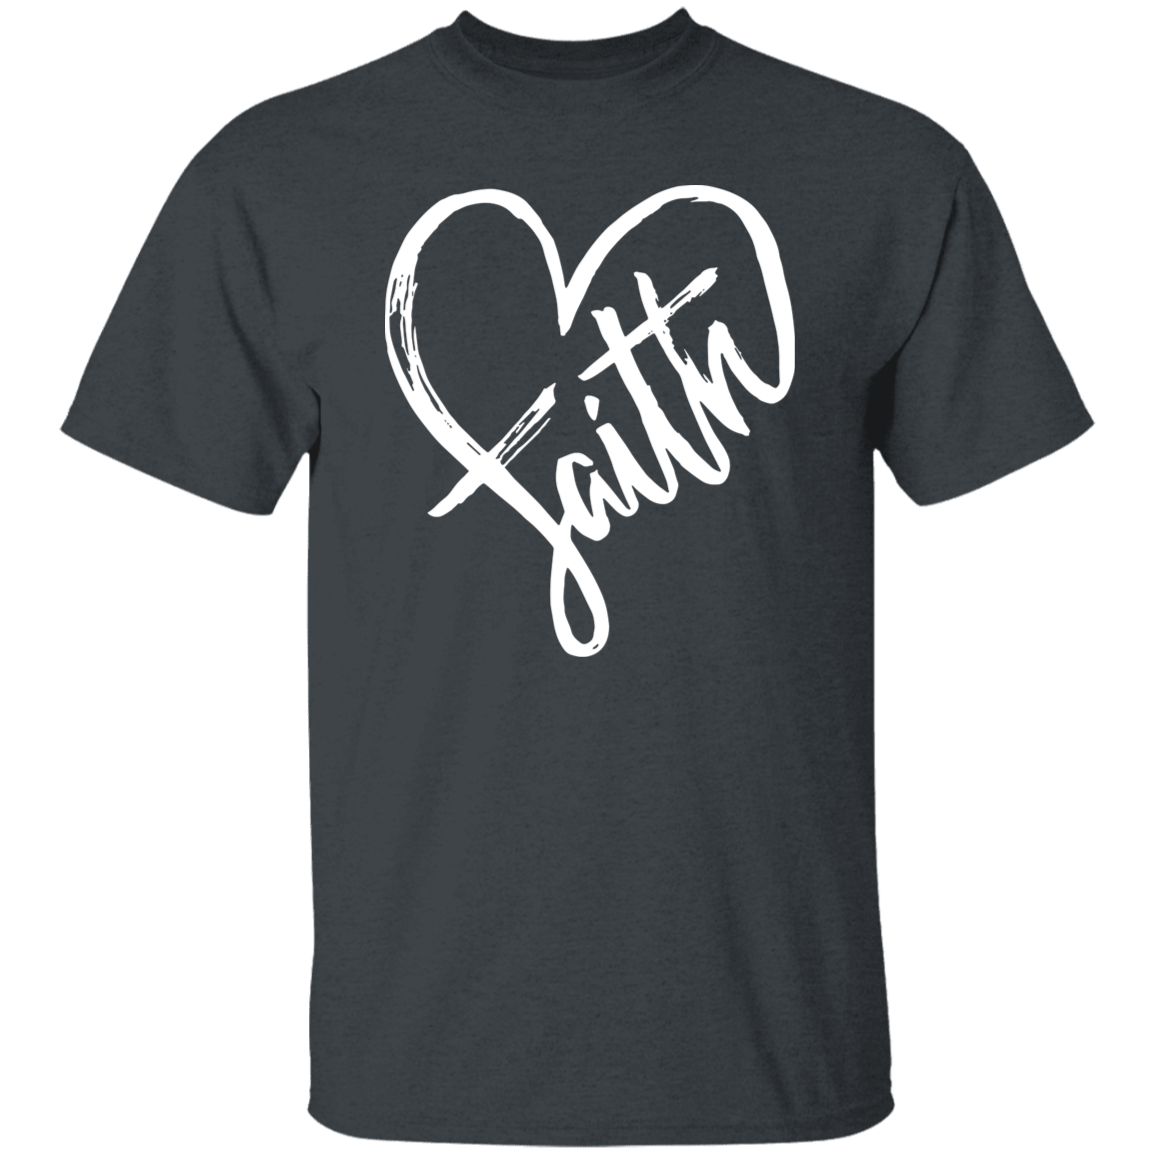 Faith Heart T-Shirt